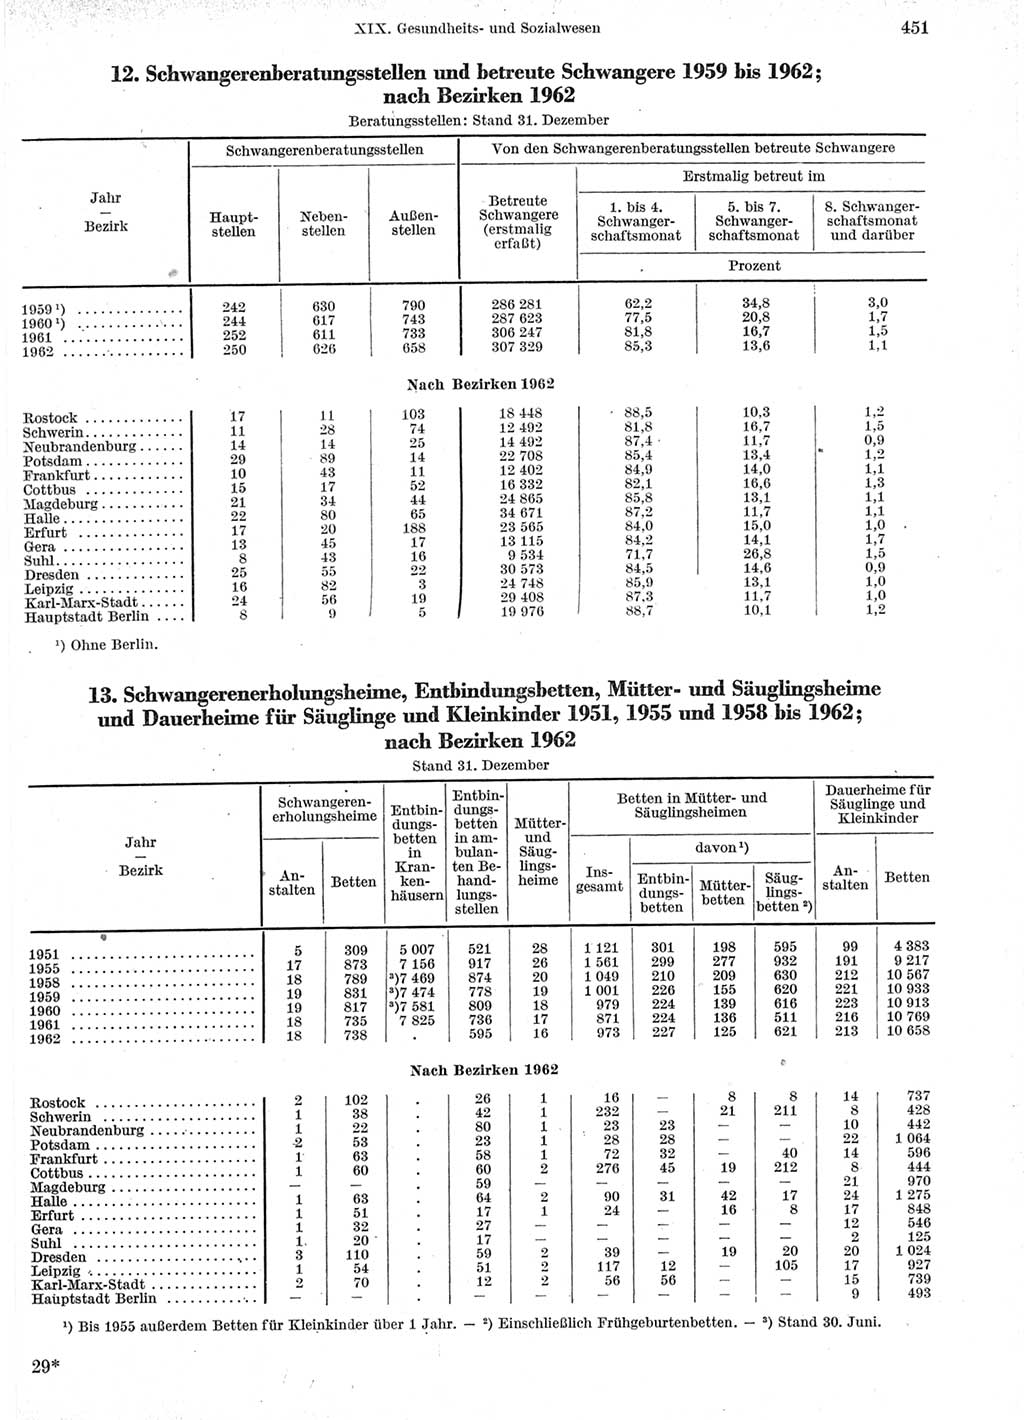 Statistisches Jahrbuch der Deutschen Demokratischen Republik (DDR) 1963, Seite 451 (Stat. Jb. DDR 1963, S. 451)